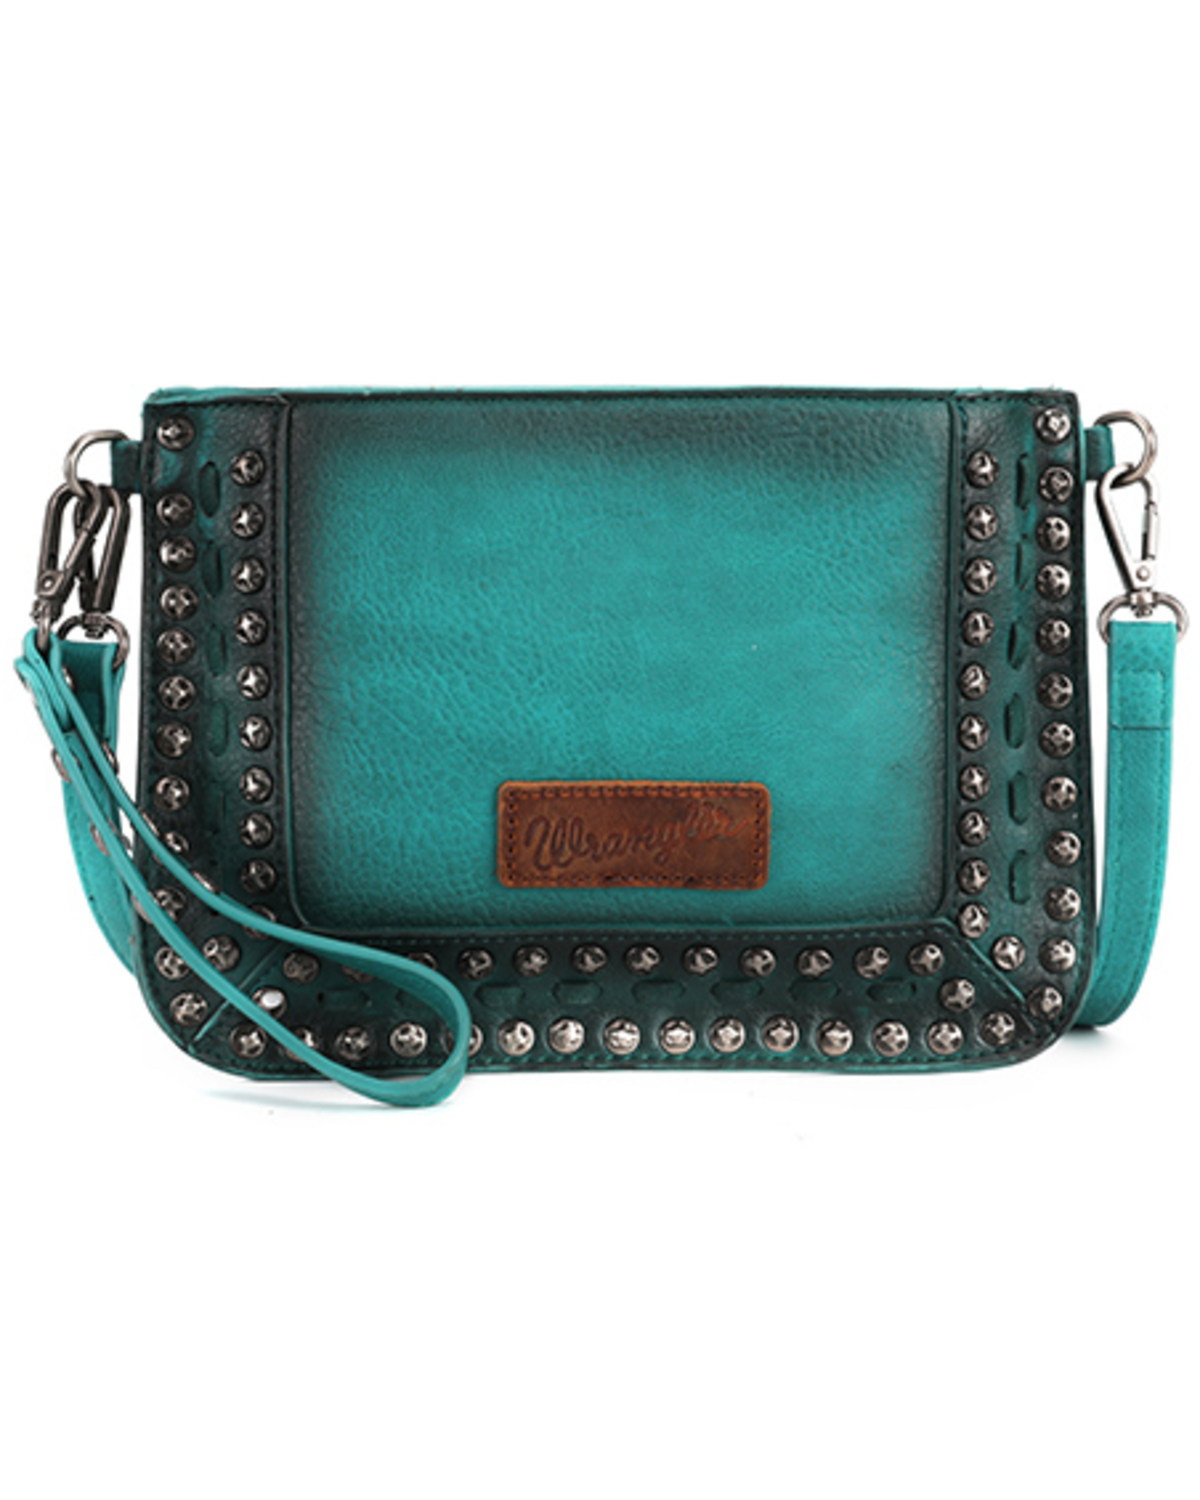 Wrangler Women's Small Studded Leather Crossbody Bag